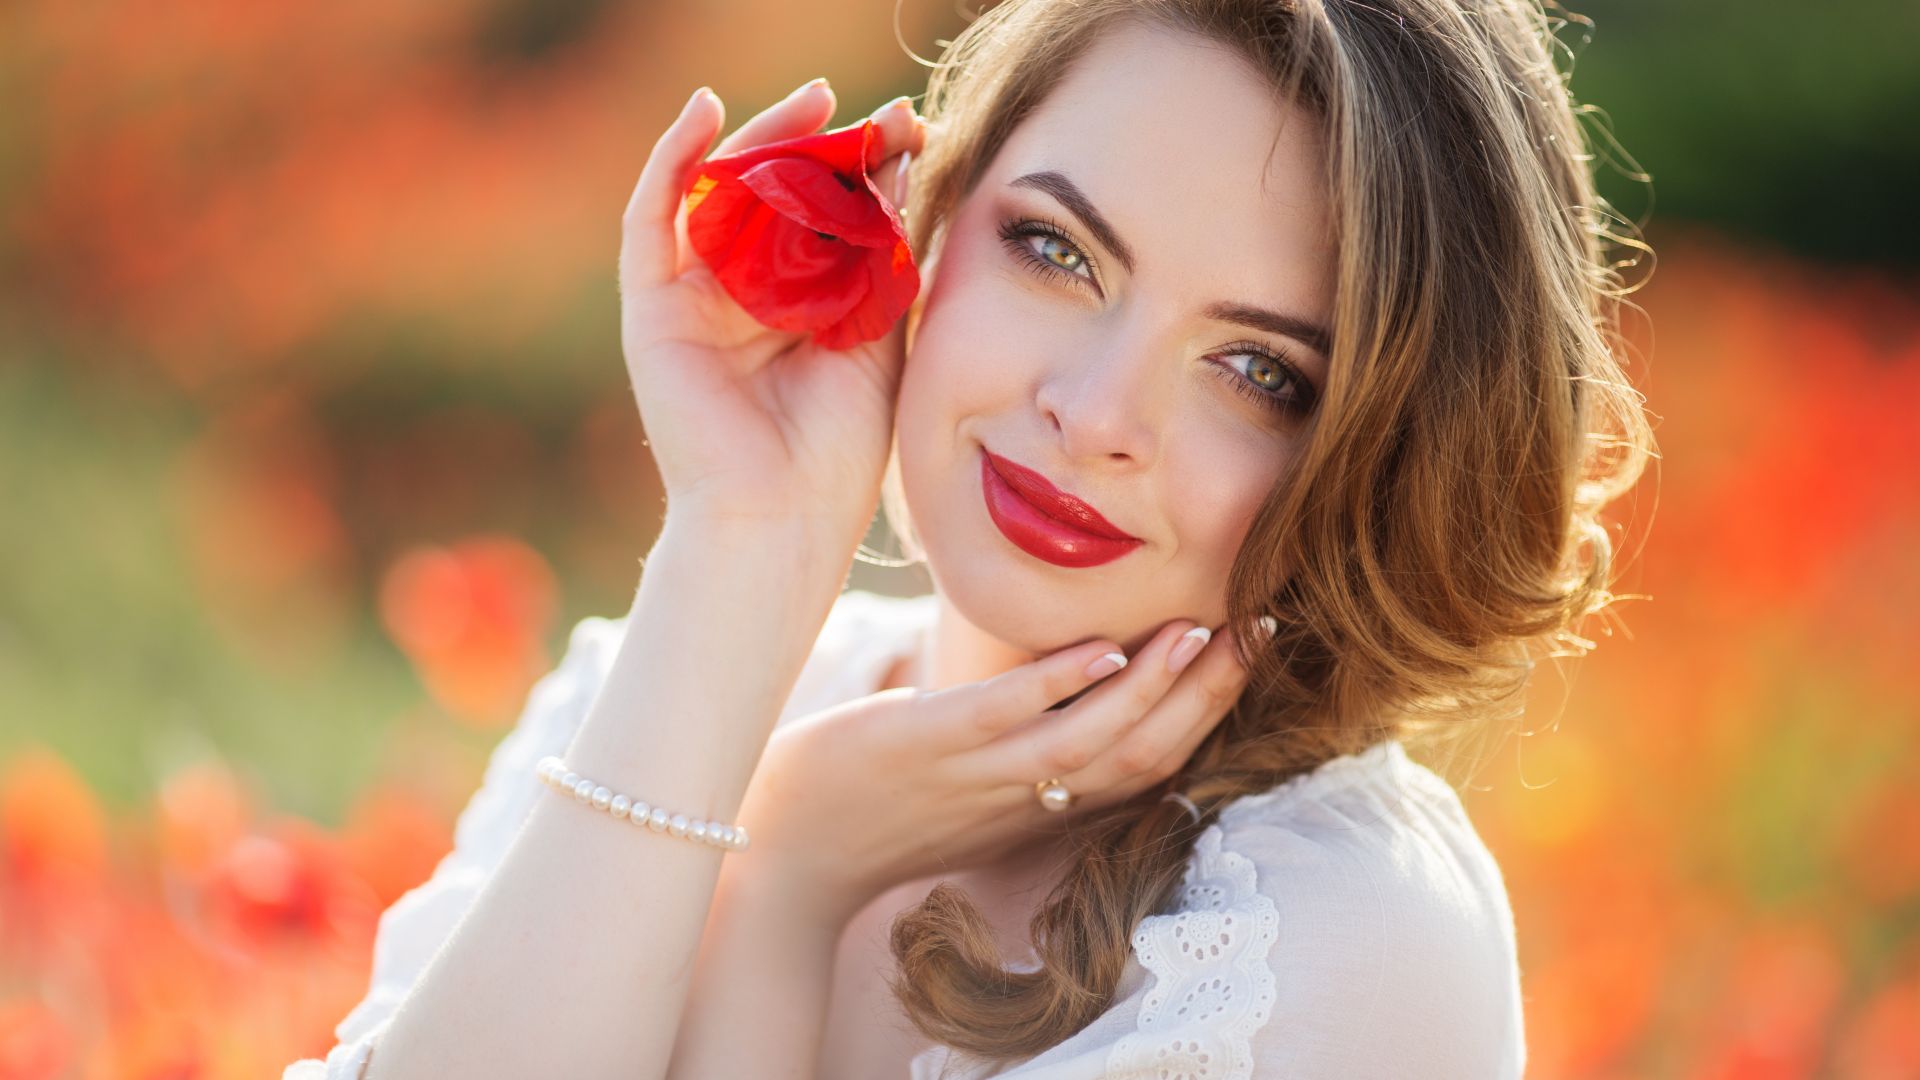 Wallpaper Brunette, girl model, smile, red lipstick, outdoor